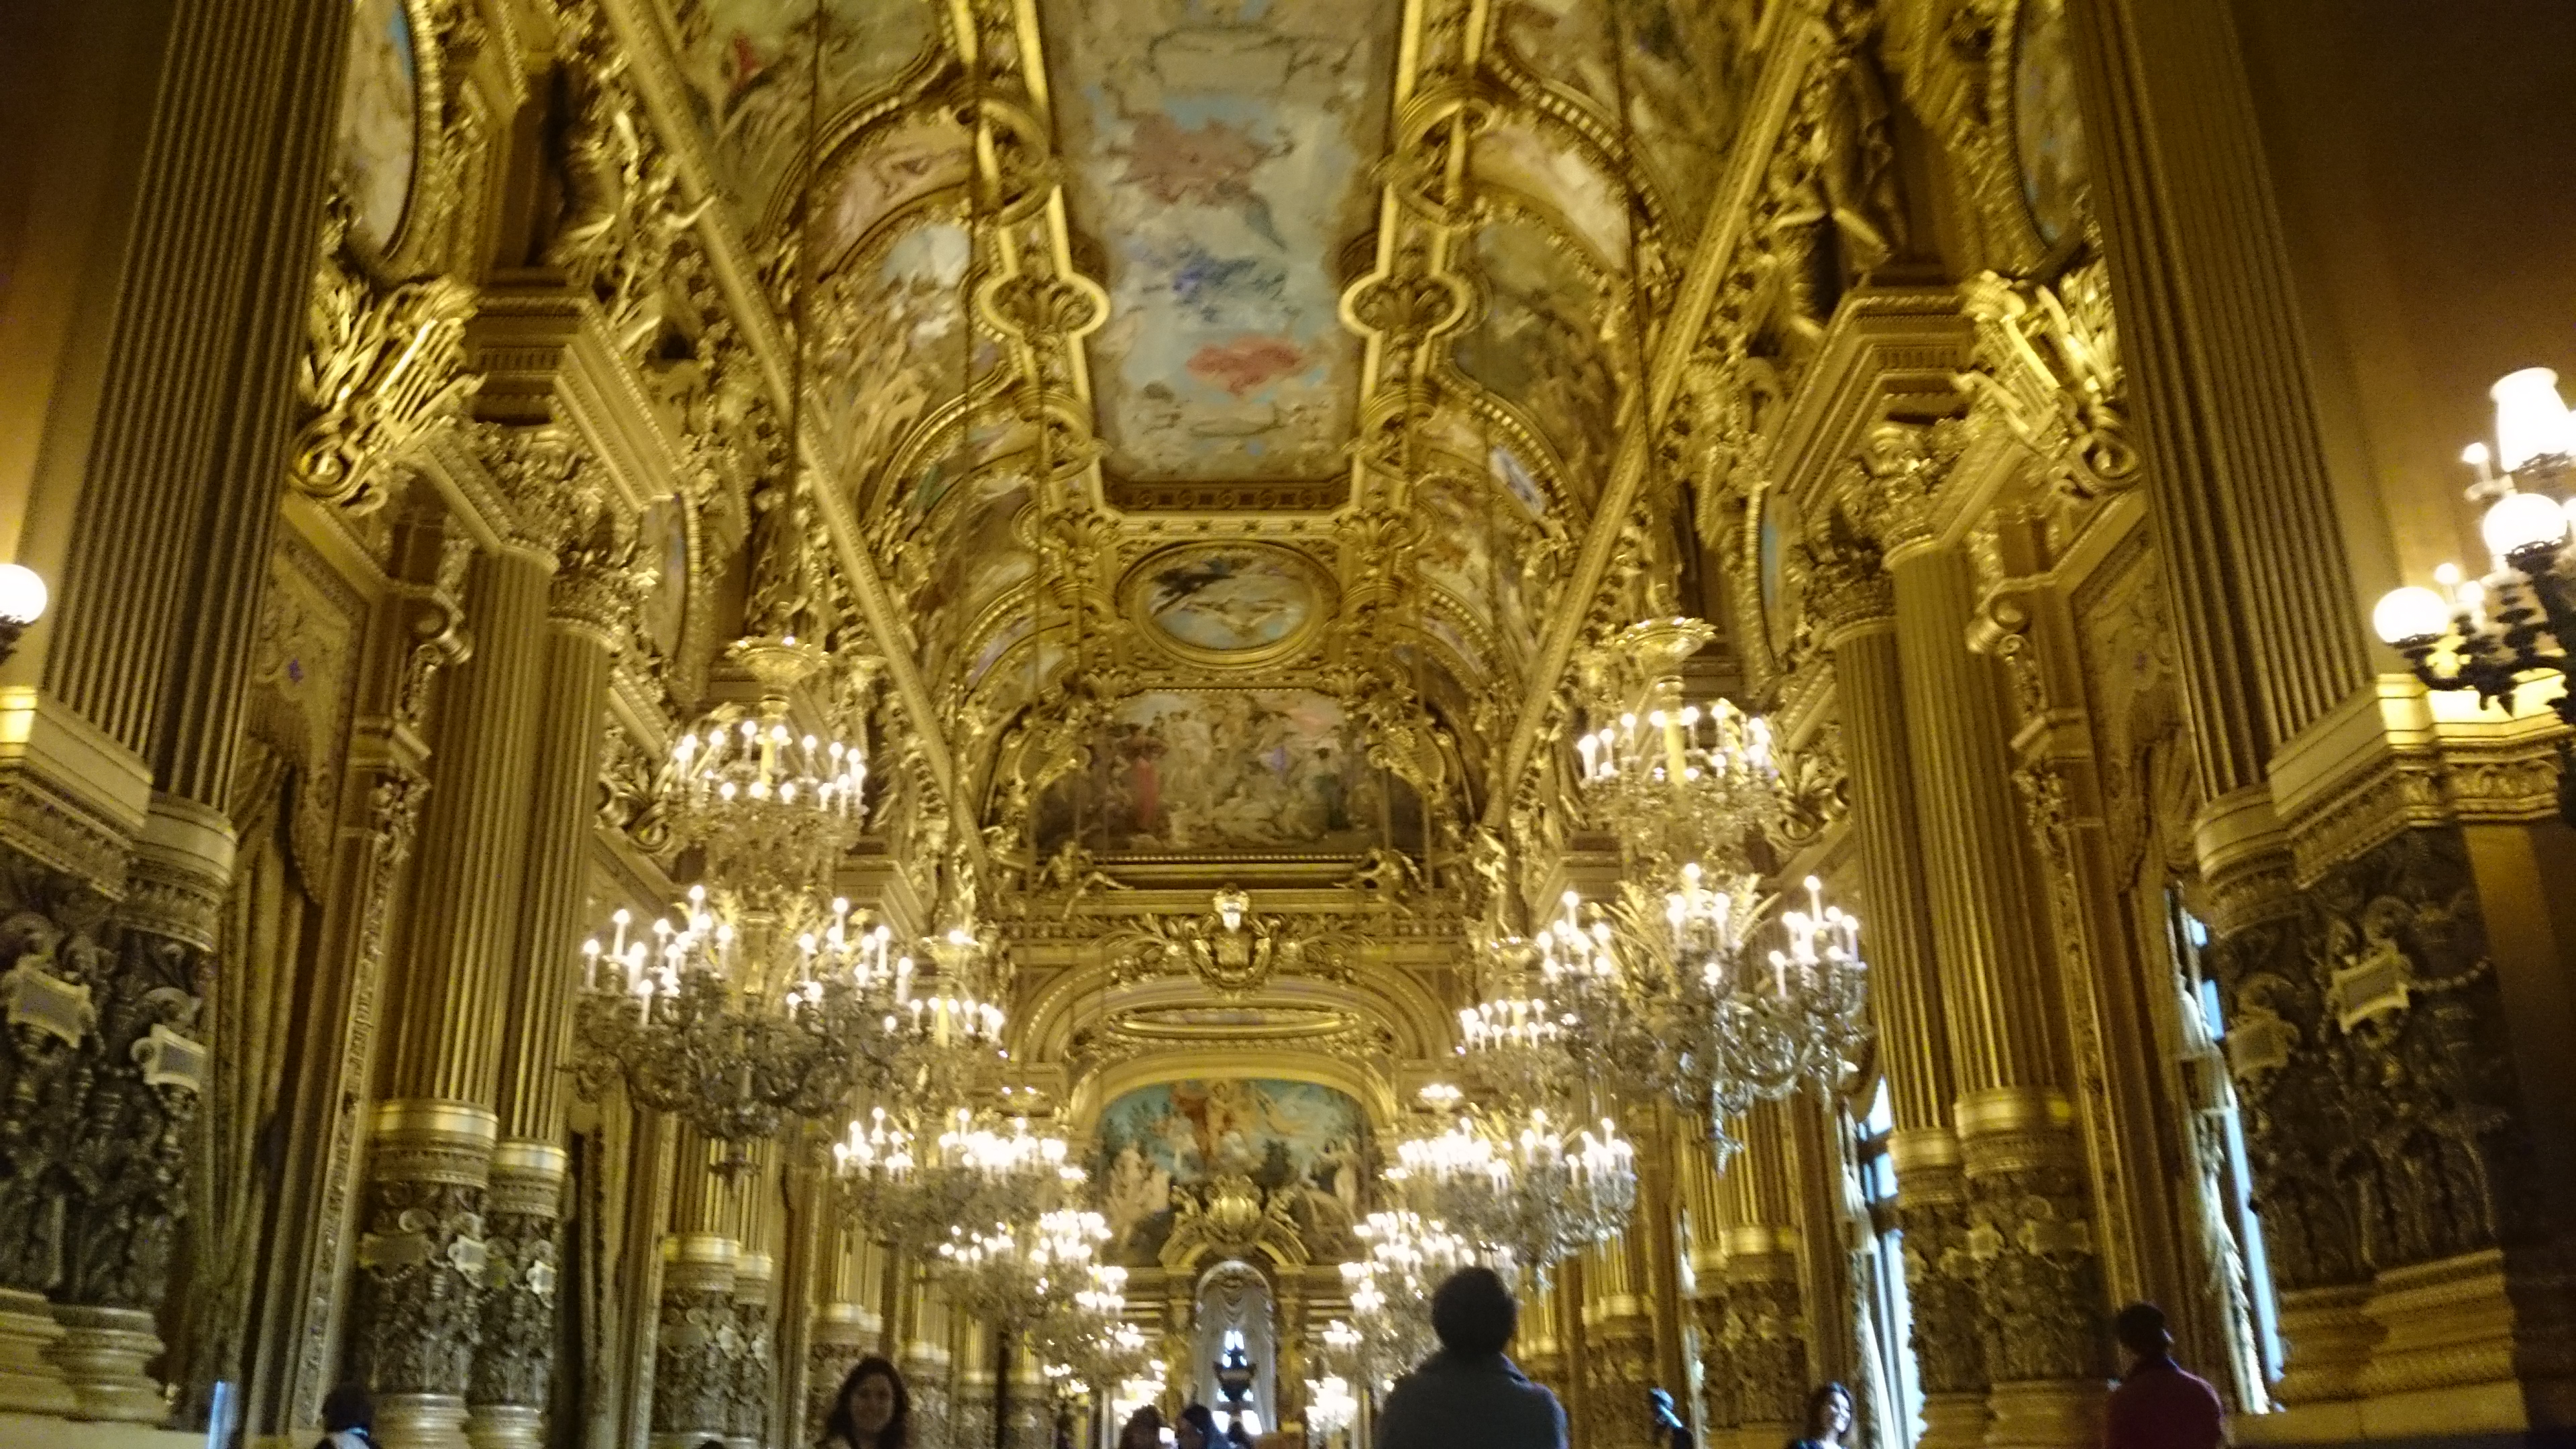 dsc 1043 - Una visita a la Opera de Paris (Palais Garnier)